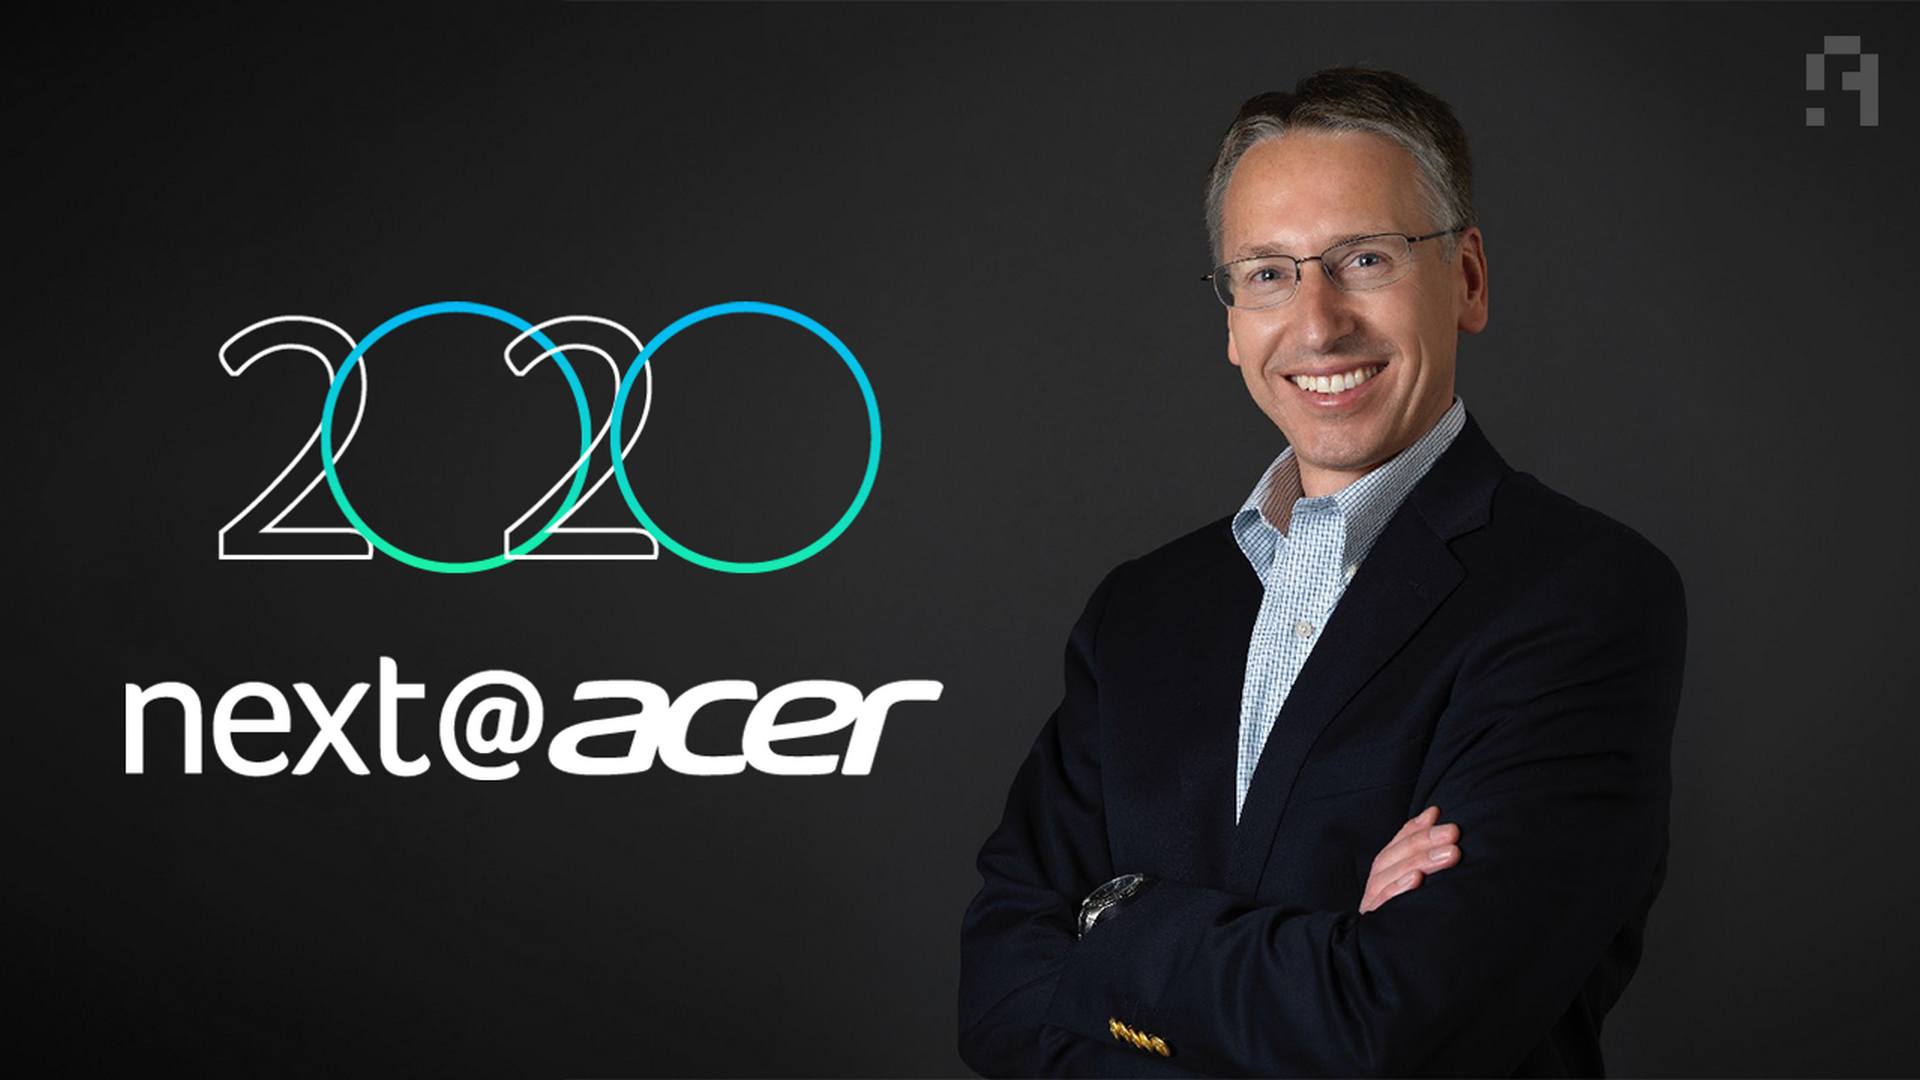 كل ما ورد في مقابلتنا مع شركة Acer: تأثير الكورونا، الألعاب والمزيد!